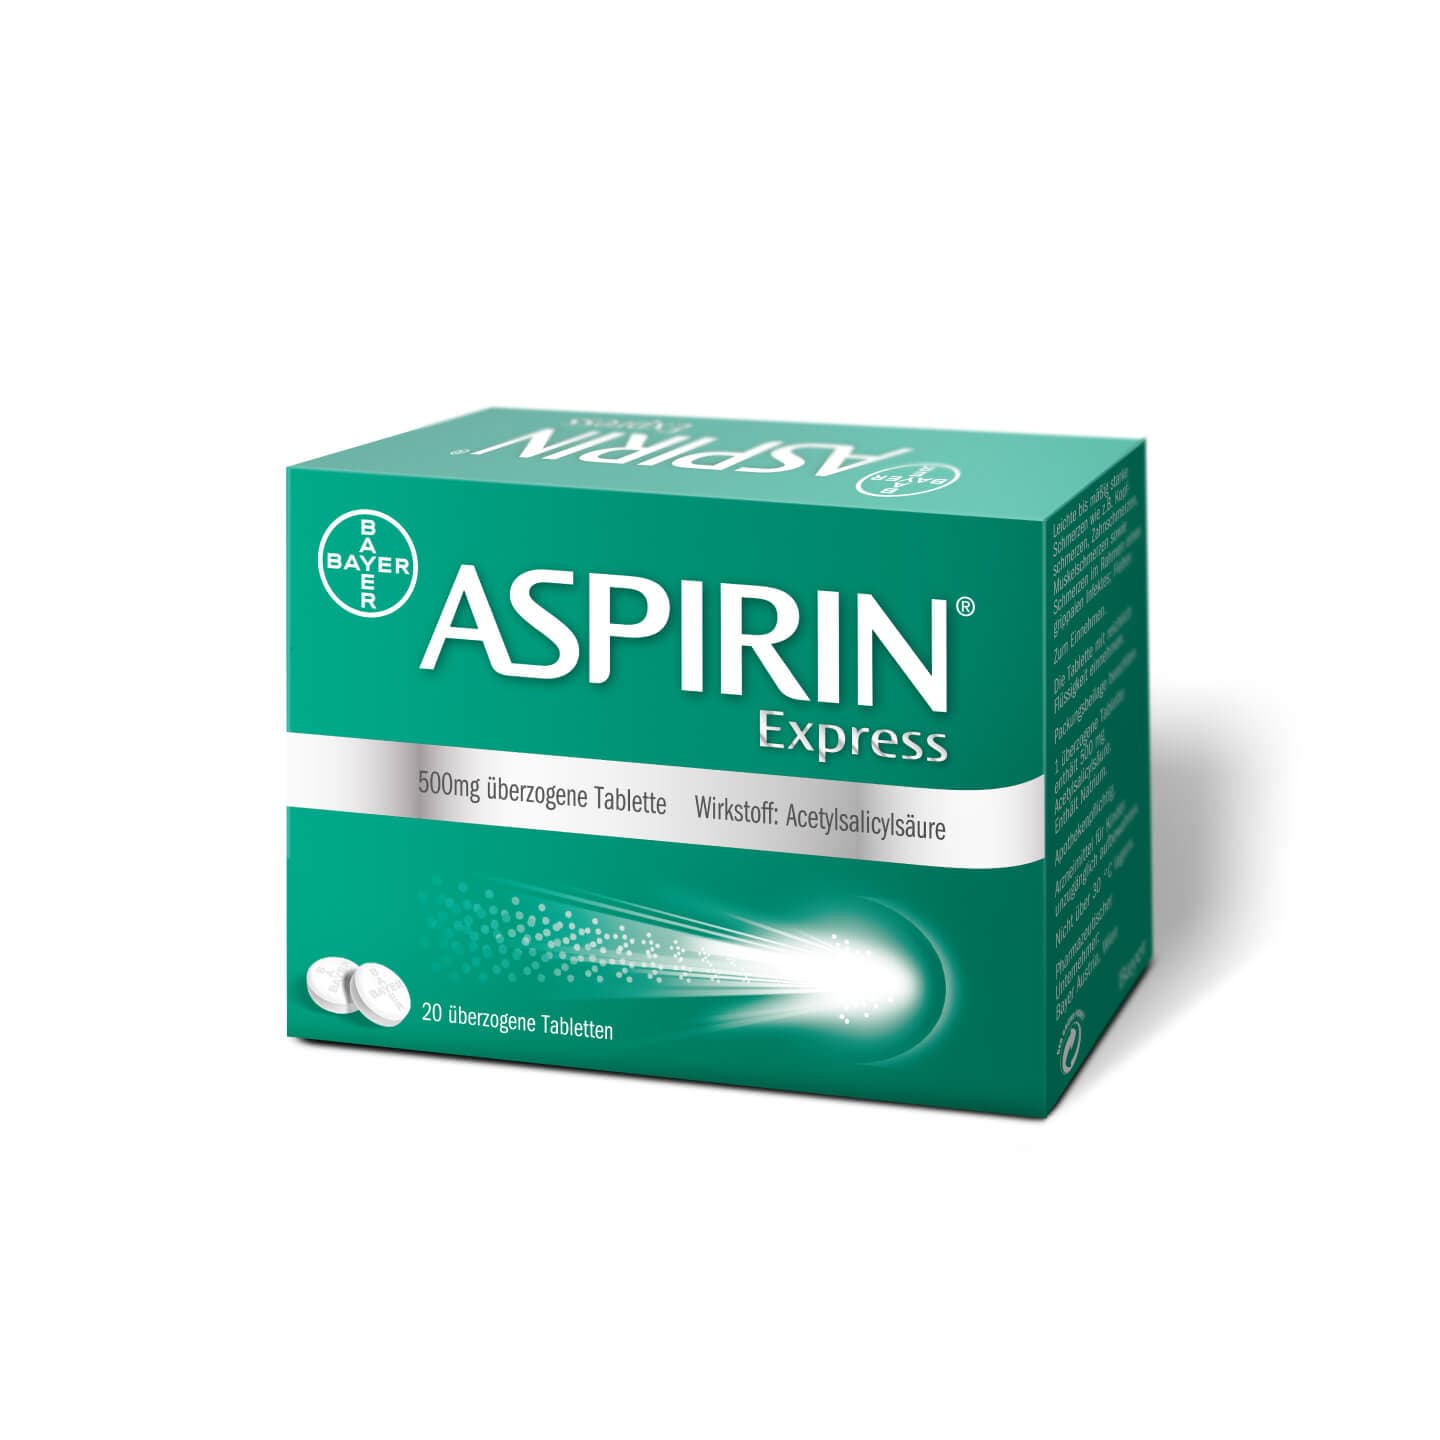 Aspirin® Express 20